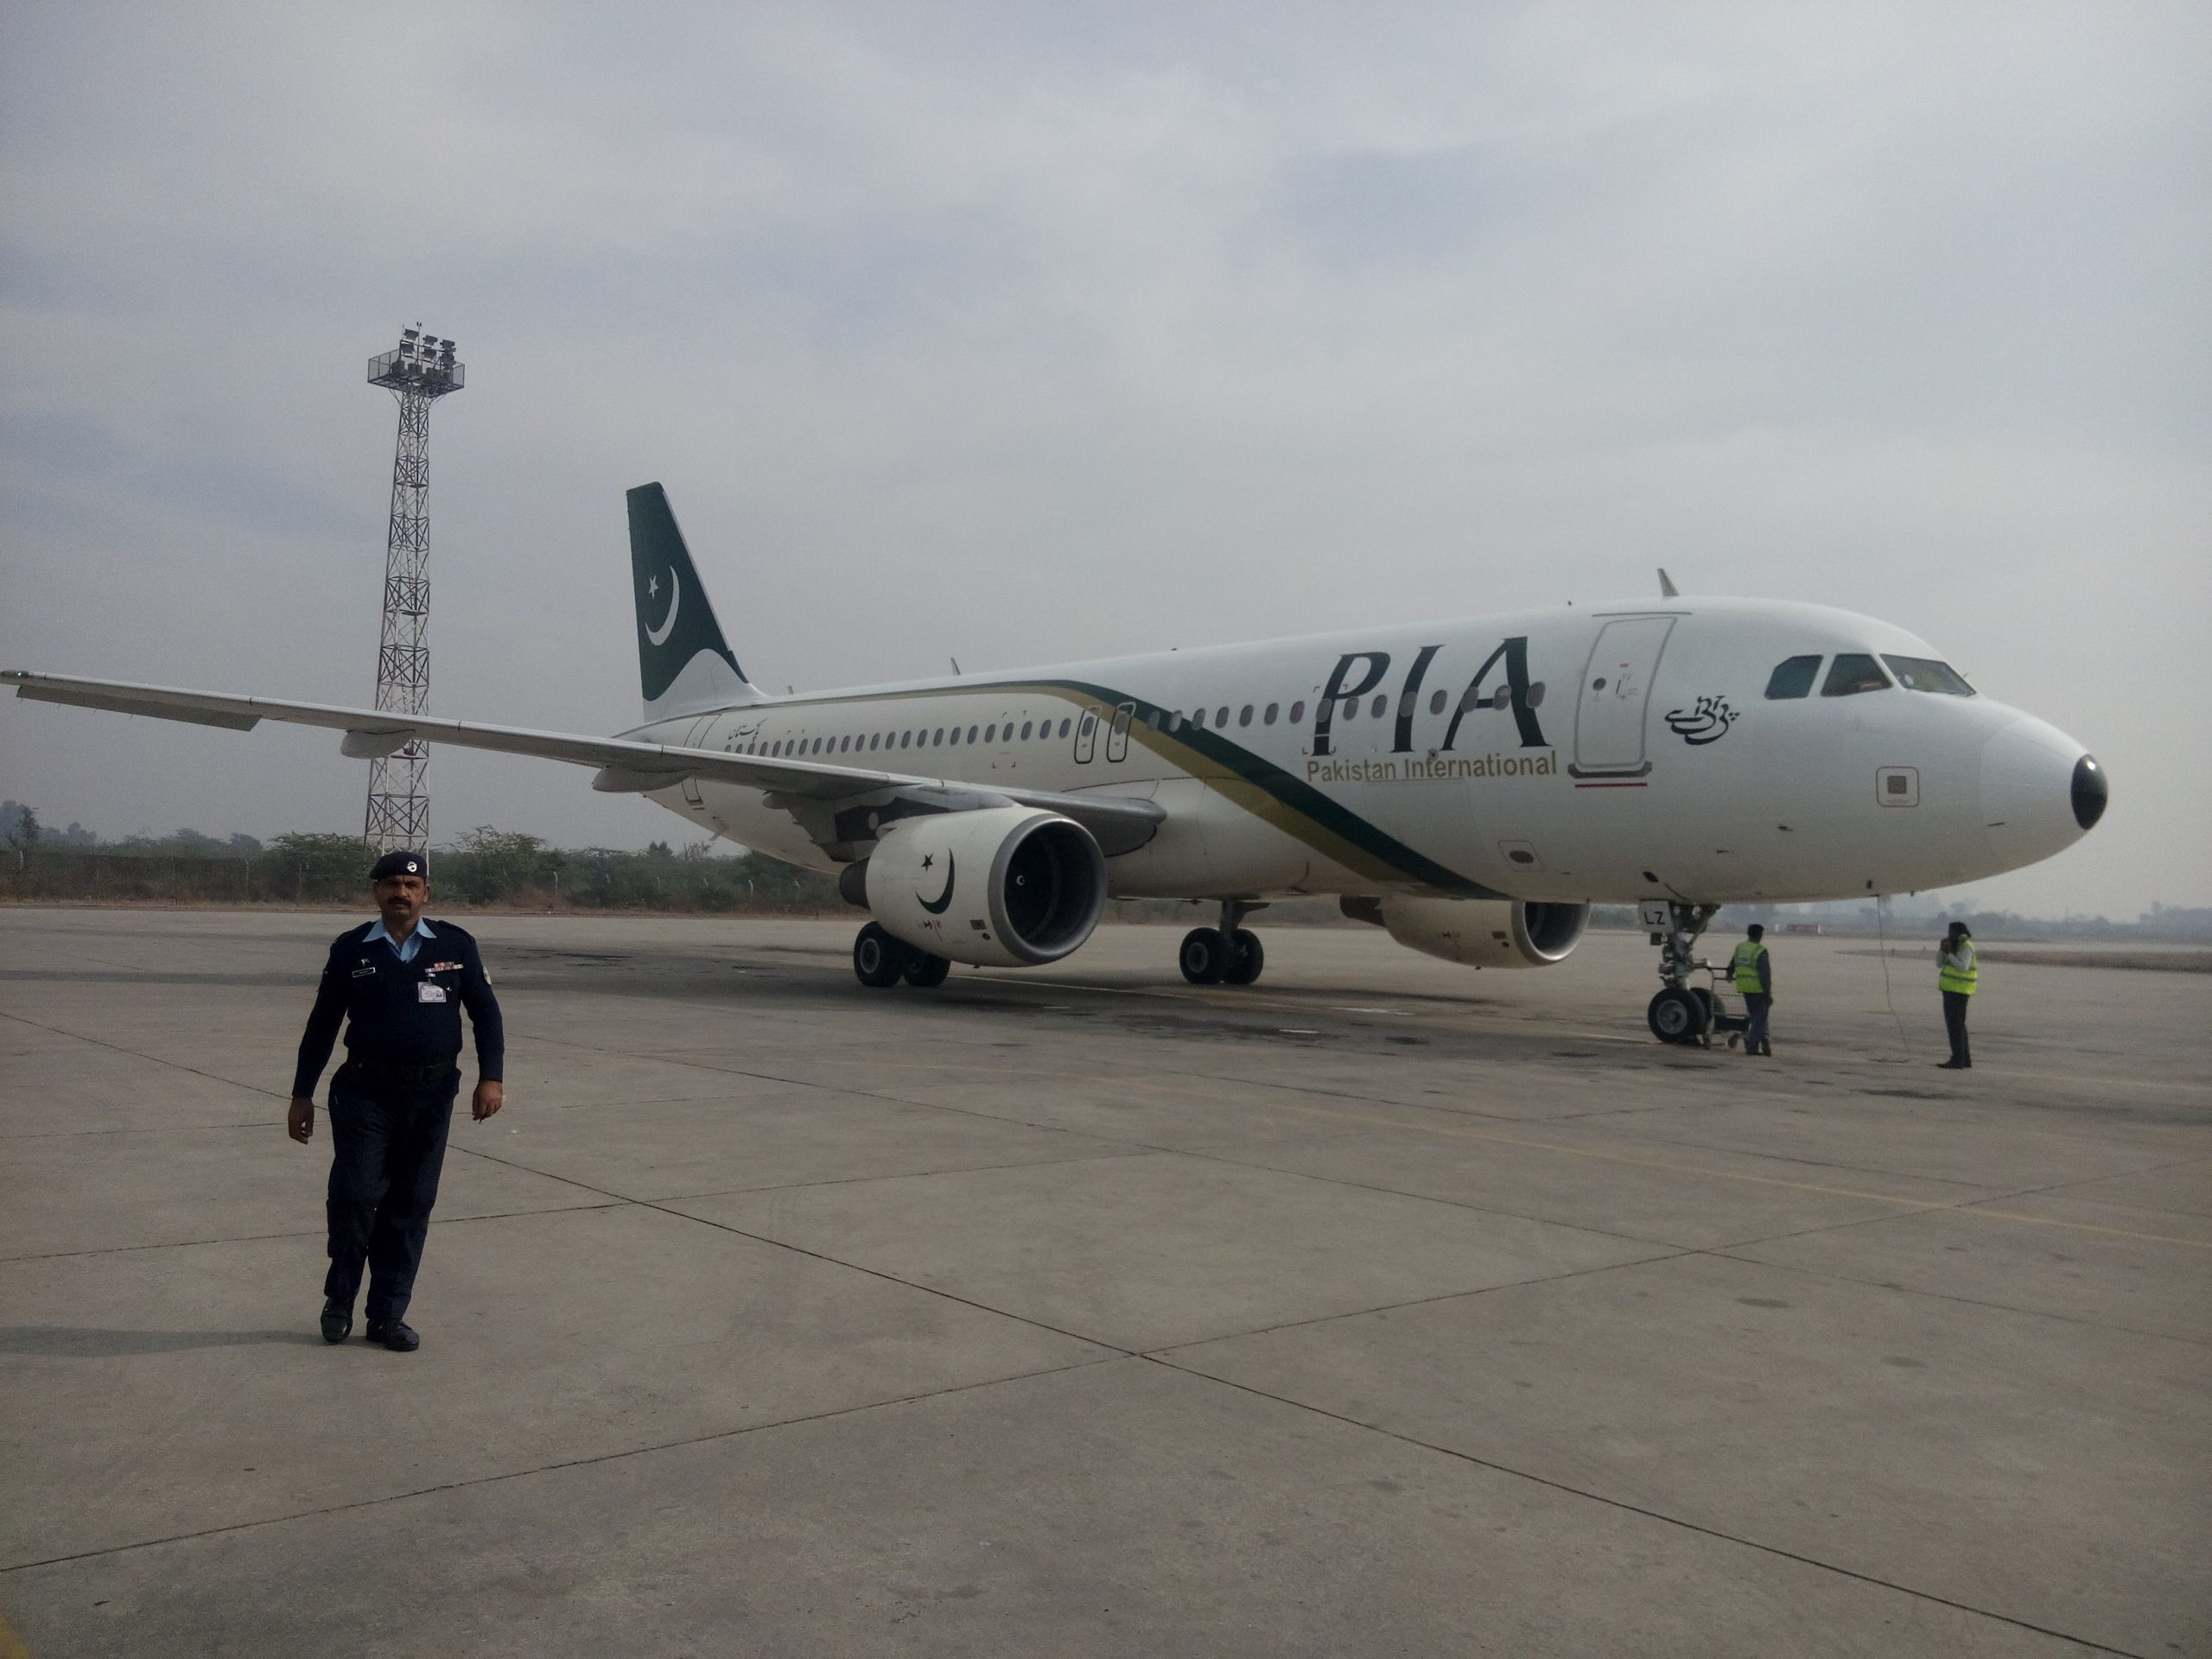 Le crash de Pakistan International Airlines en vidéos 4 Air Journal